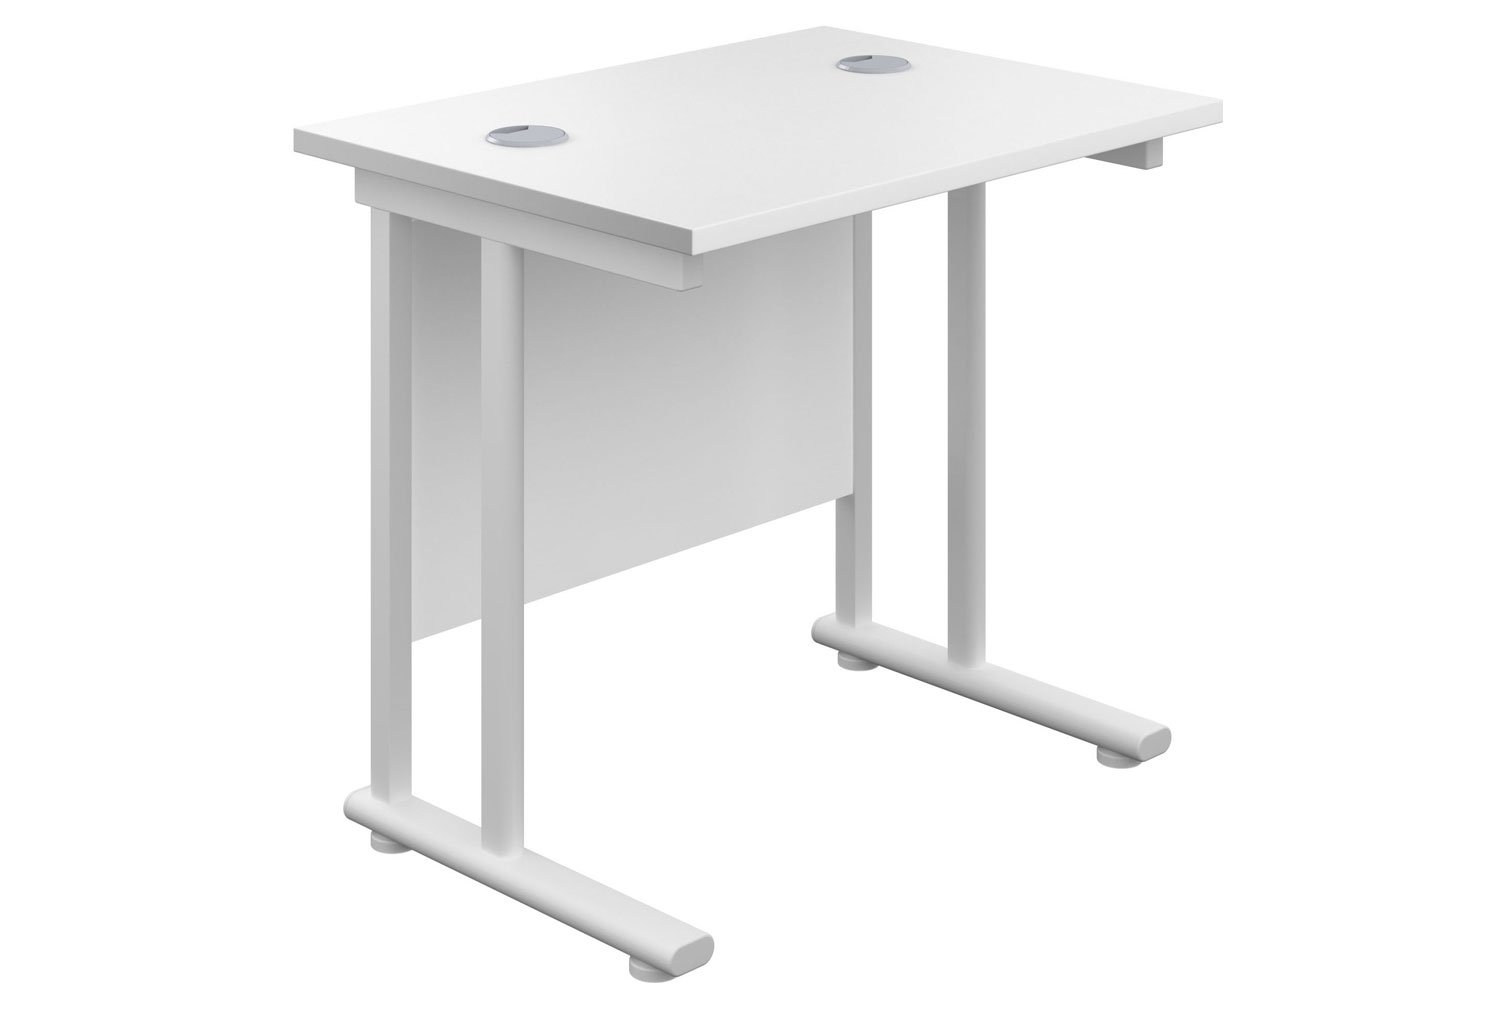 Impulse Narrow Rectangular Office Desk, 80wx60dx73h (cm), White Frame, White